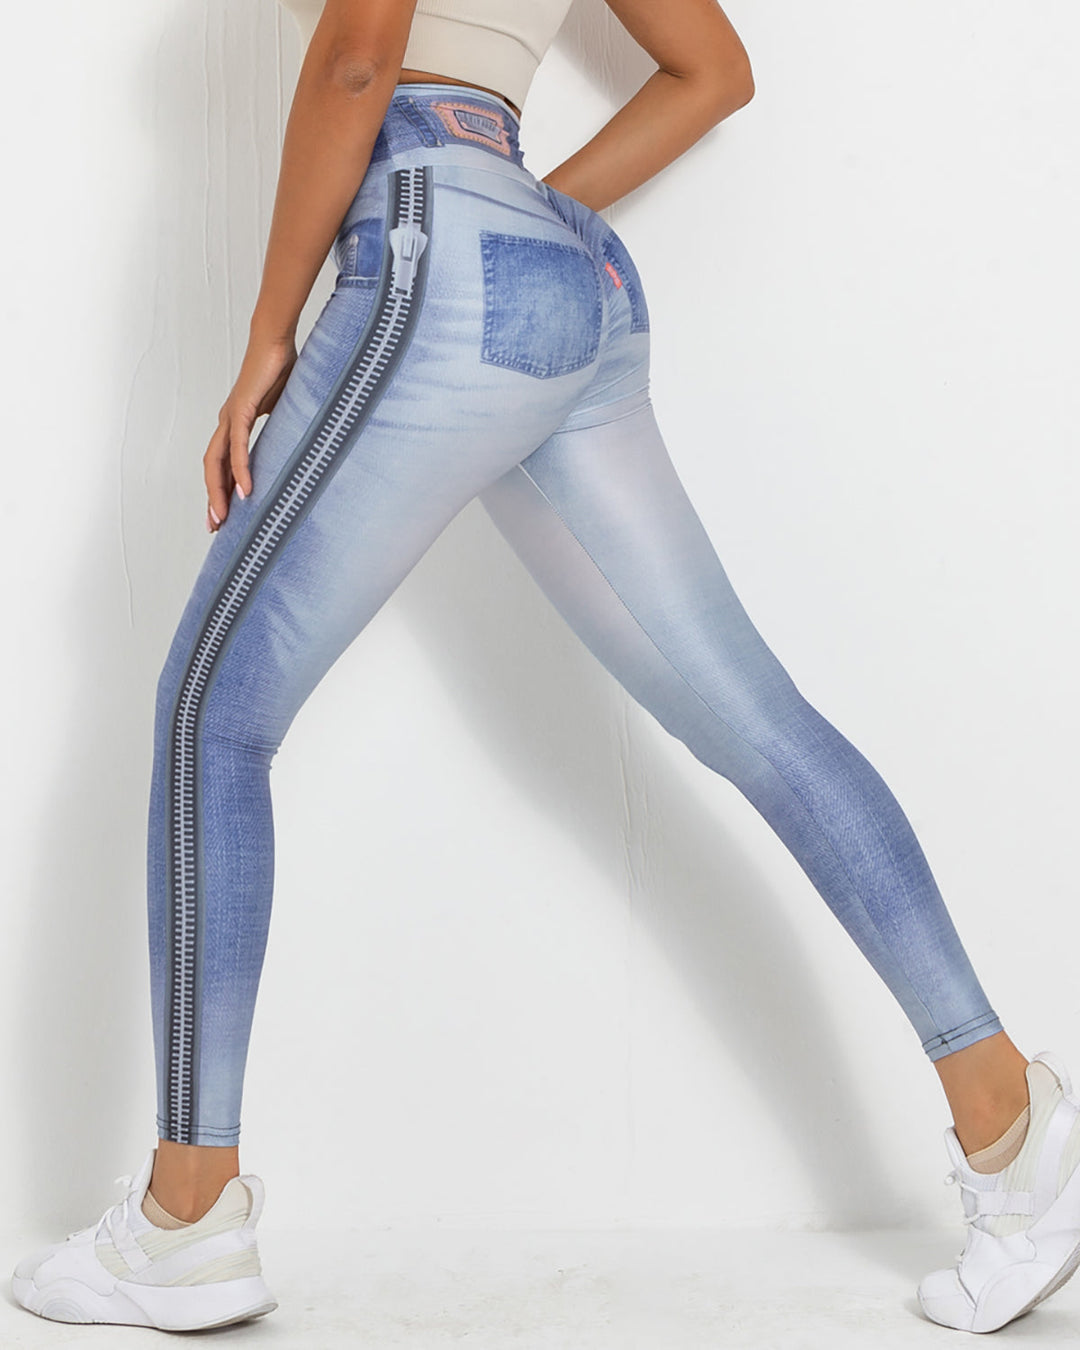 Frehsky leggings for women Women's Denim Print Jeans Look Like Leggings  Stretchy High Waist Slim Skinny Jeggings Light Blue 